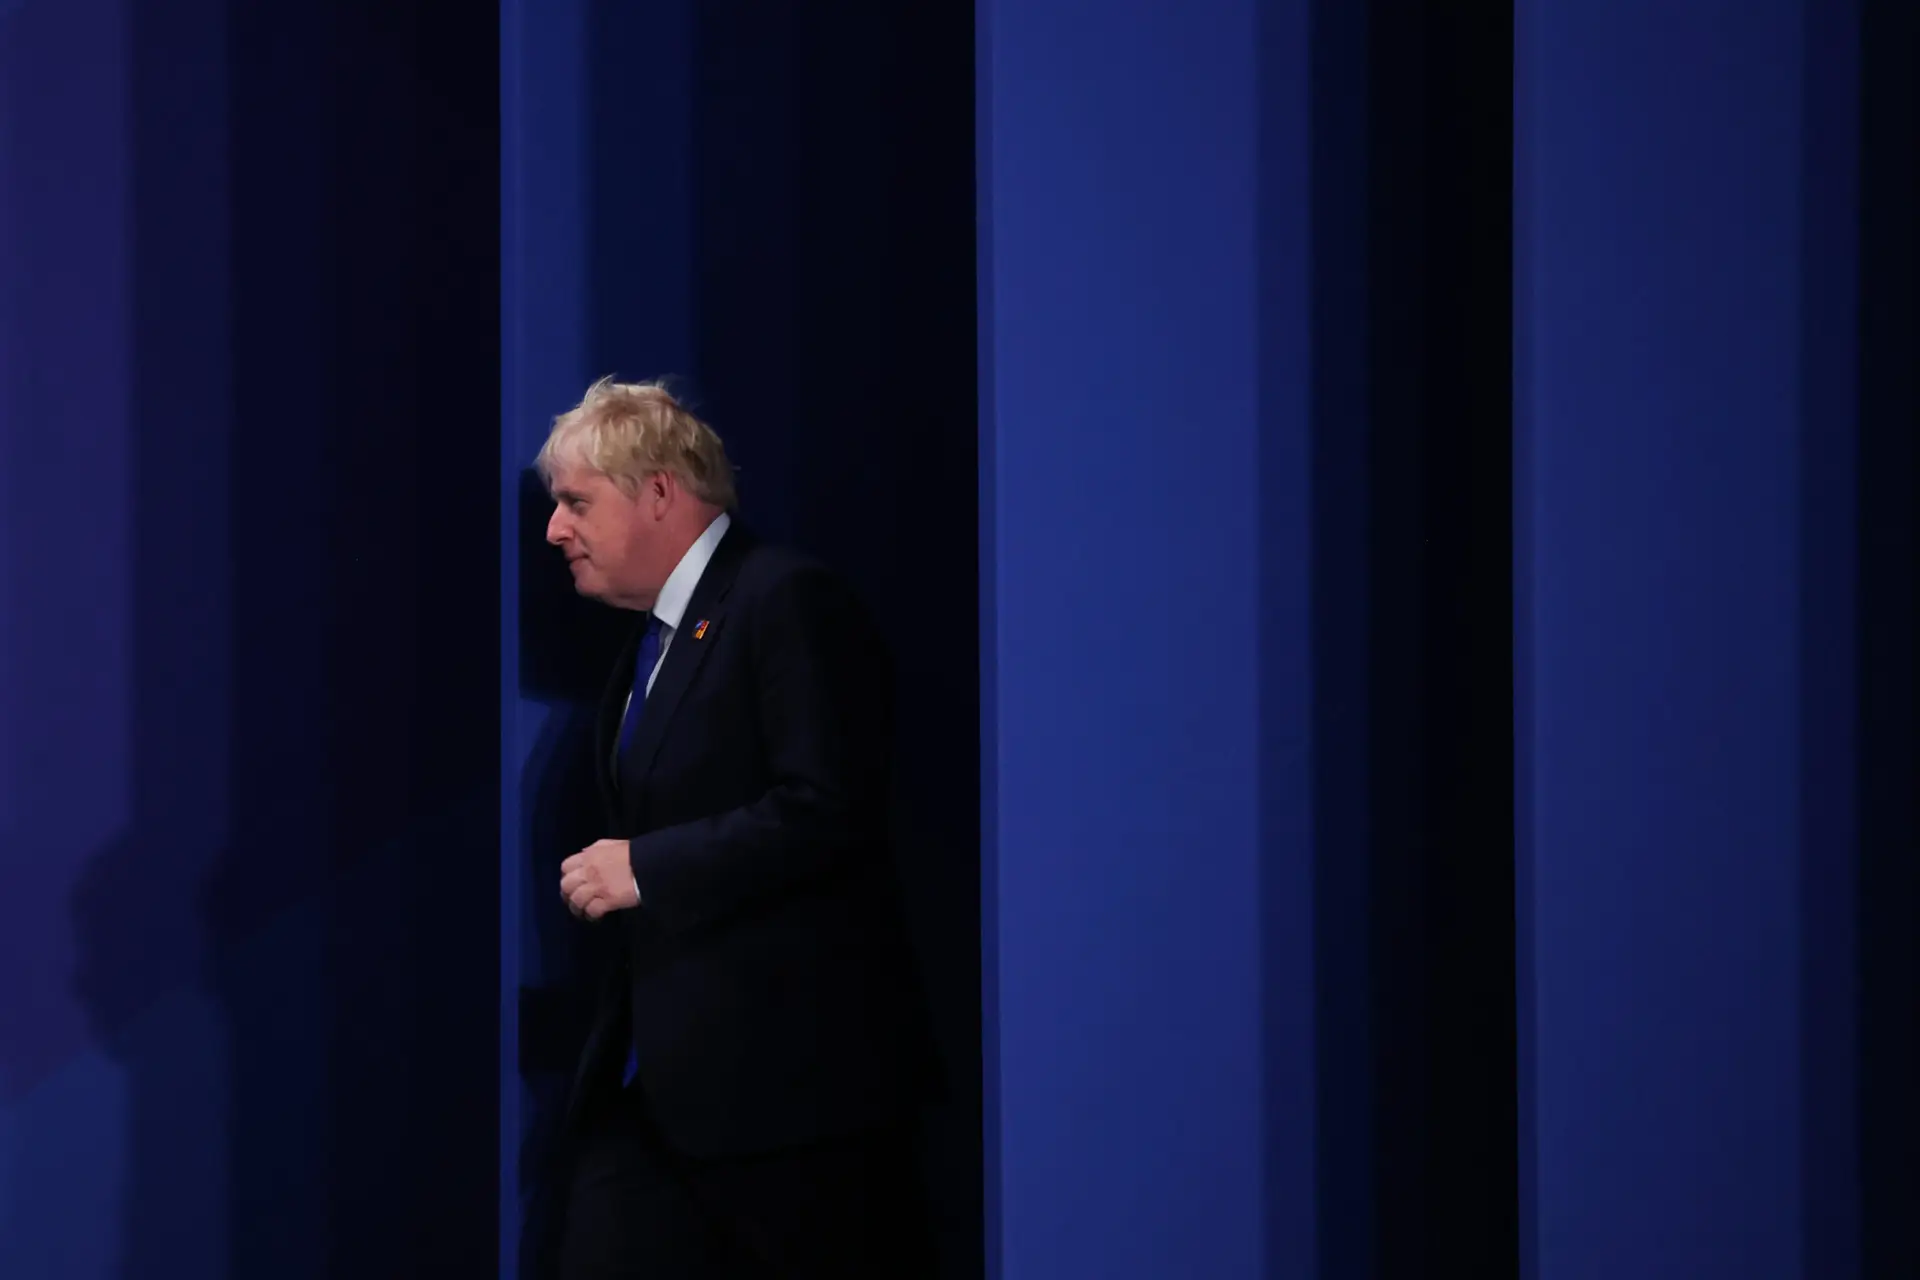 Mais dois elementos do Governo de Boris Johnson anunciaram a demissão